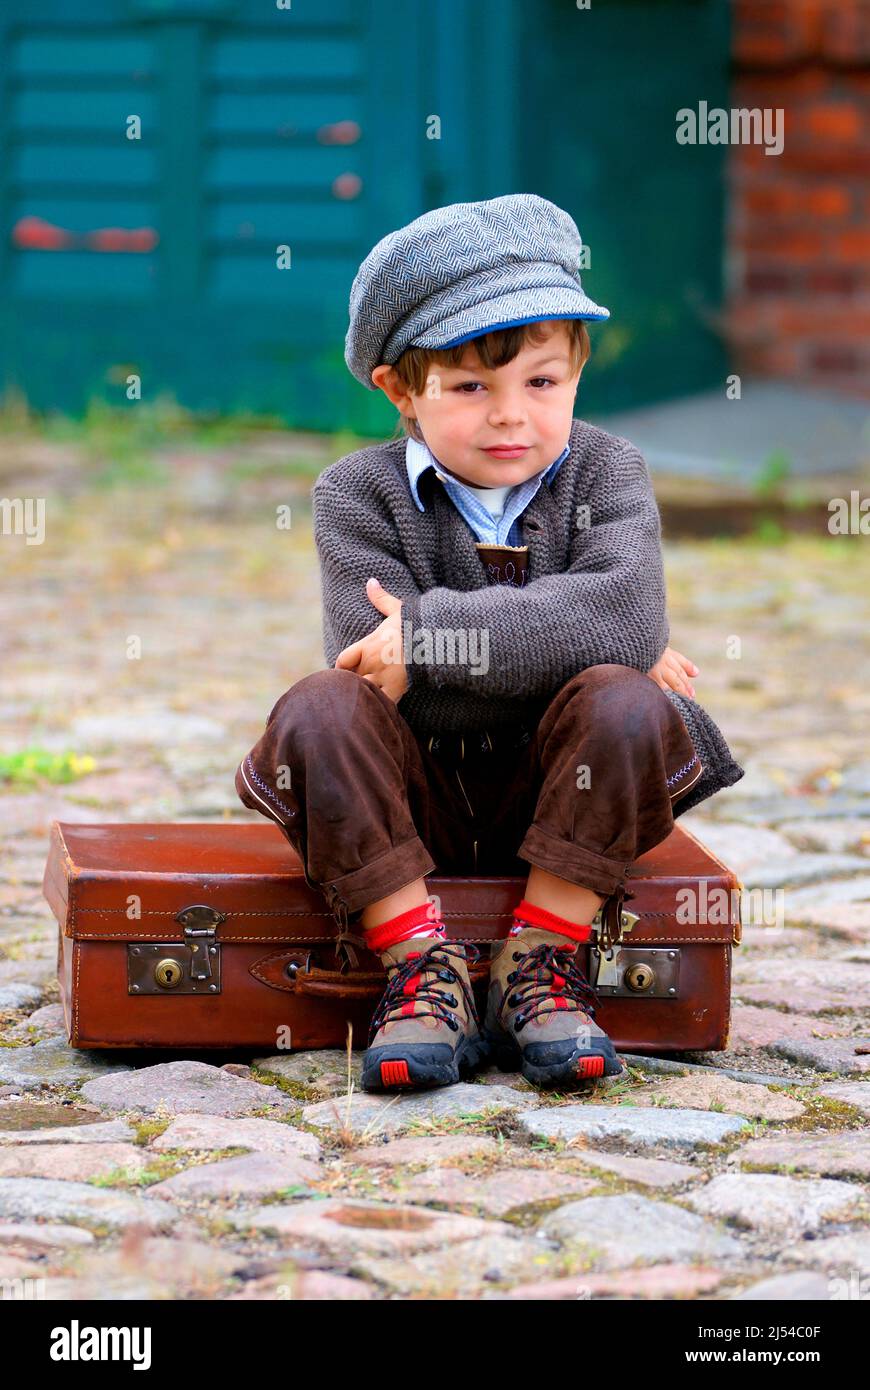 Petit garçon malheureusement assis sur une valise en cuir, Allemagne Banque D'Images